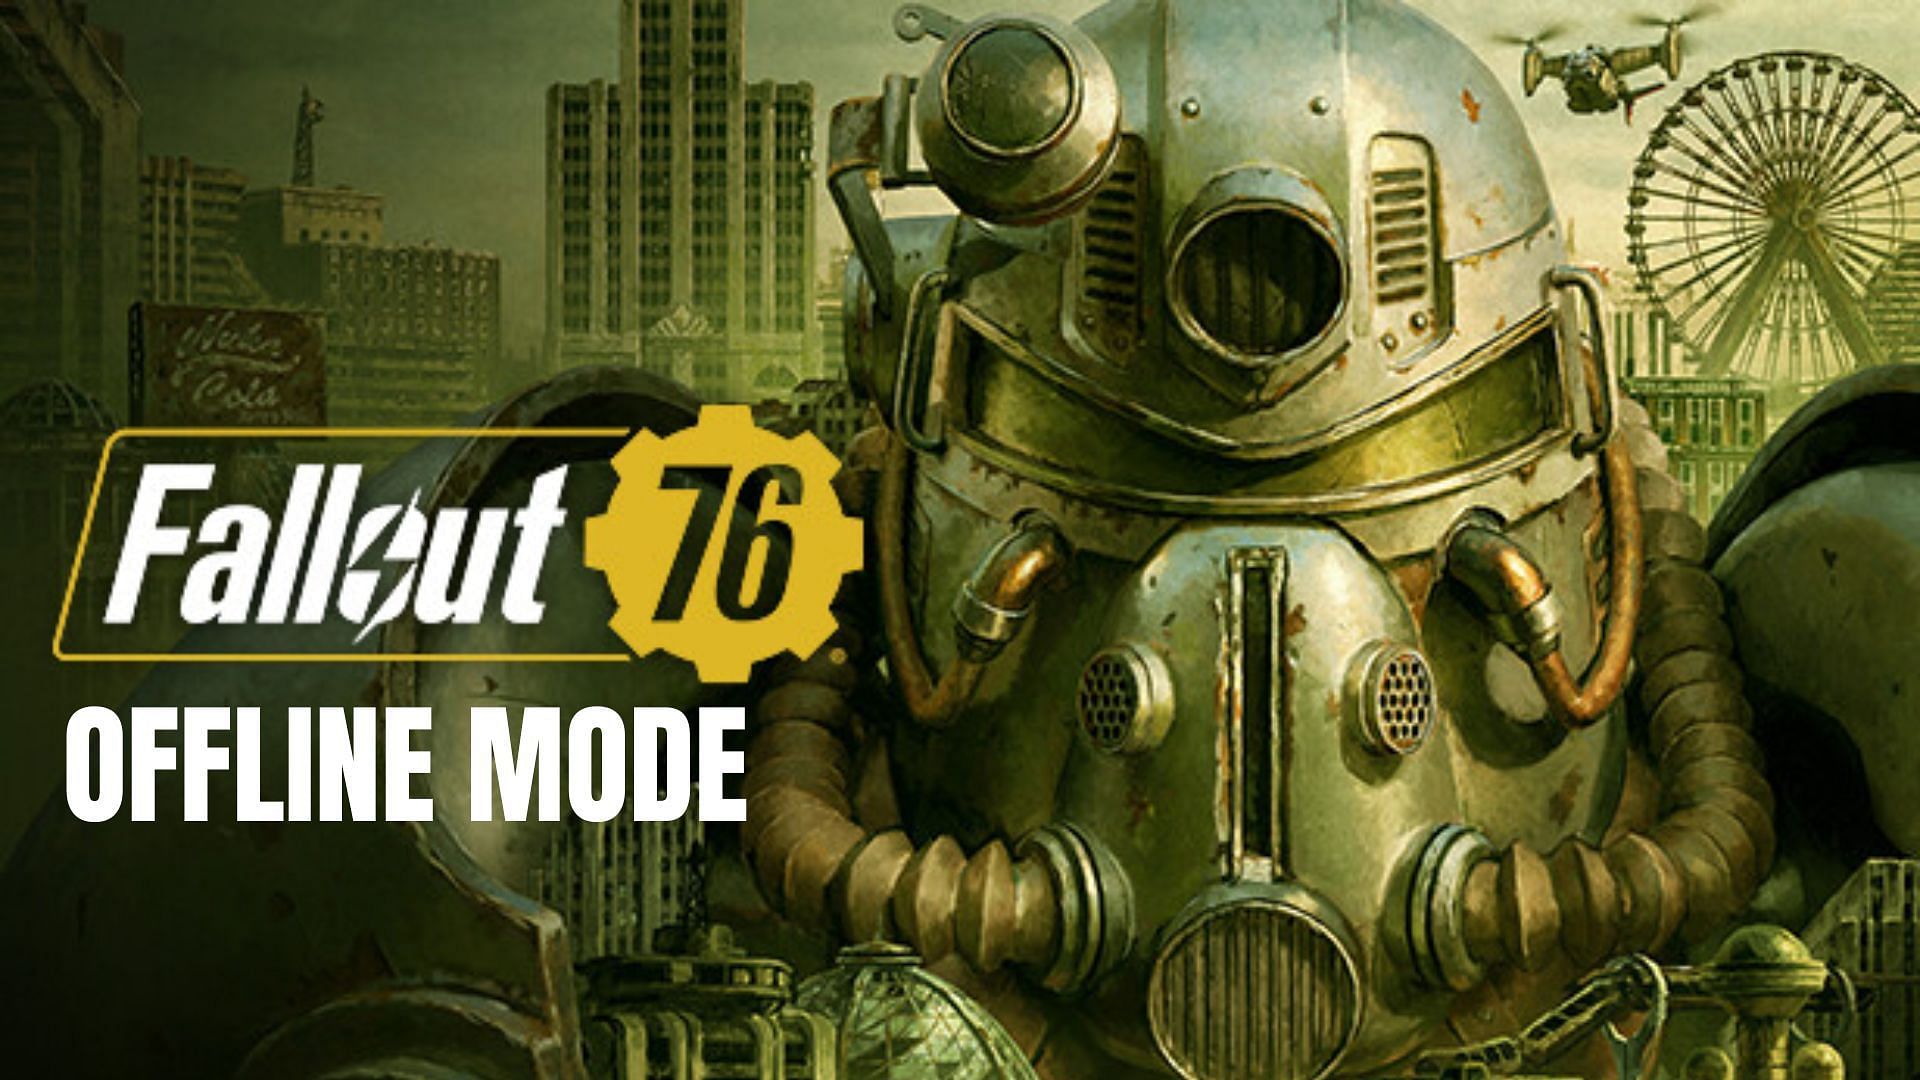 Fallout76 offline mode